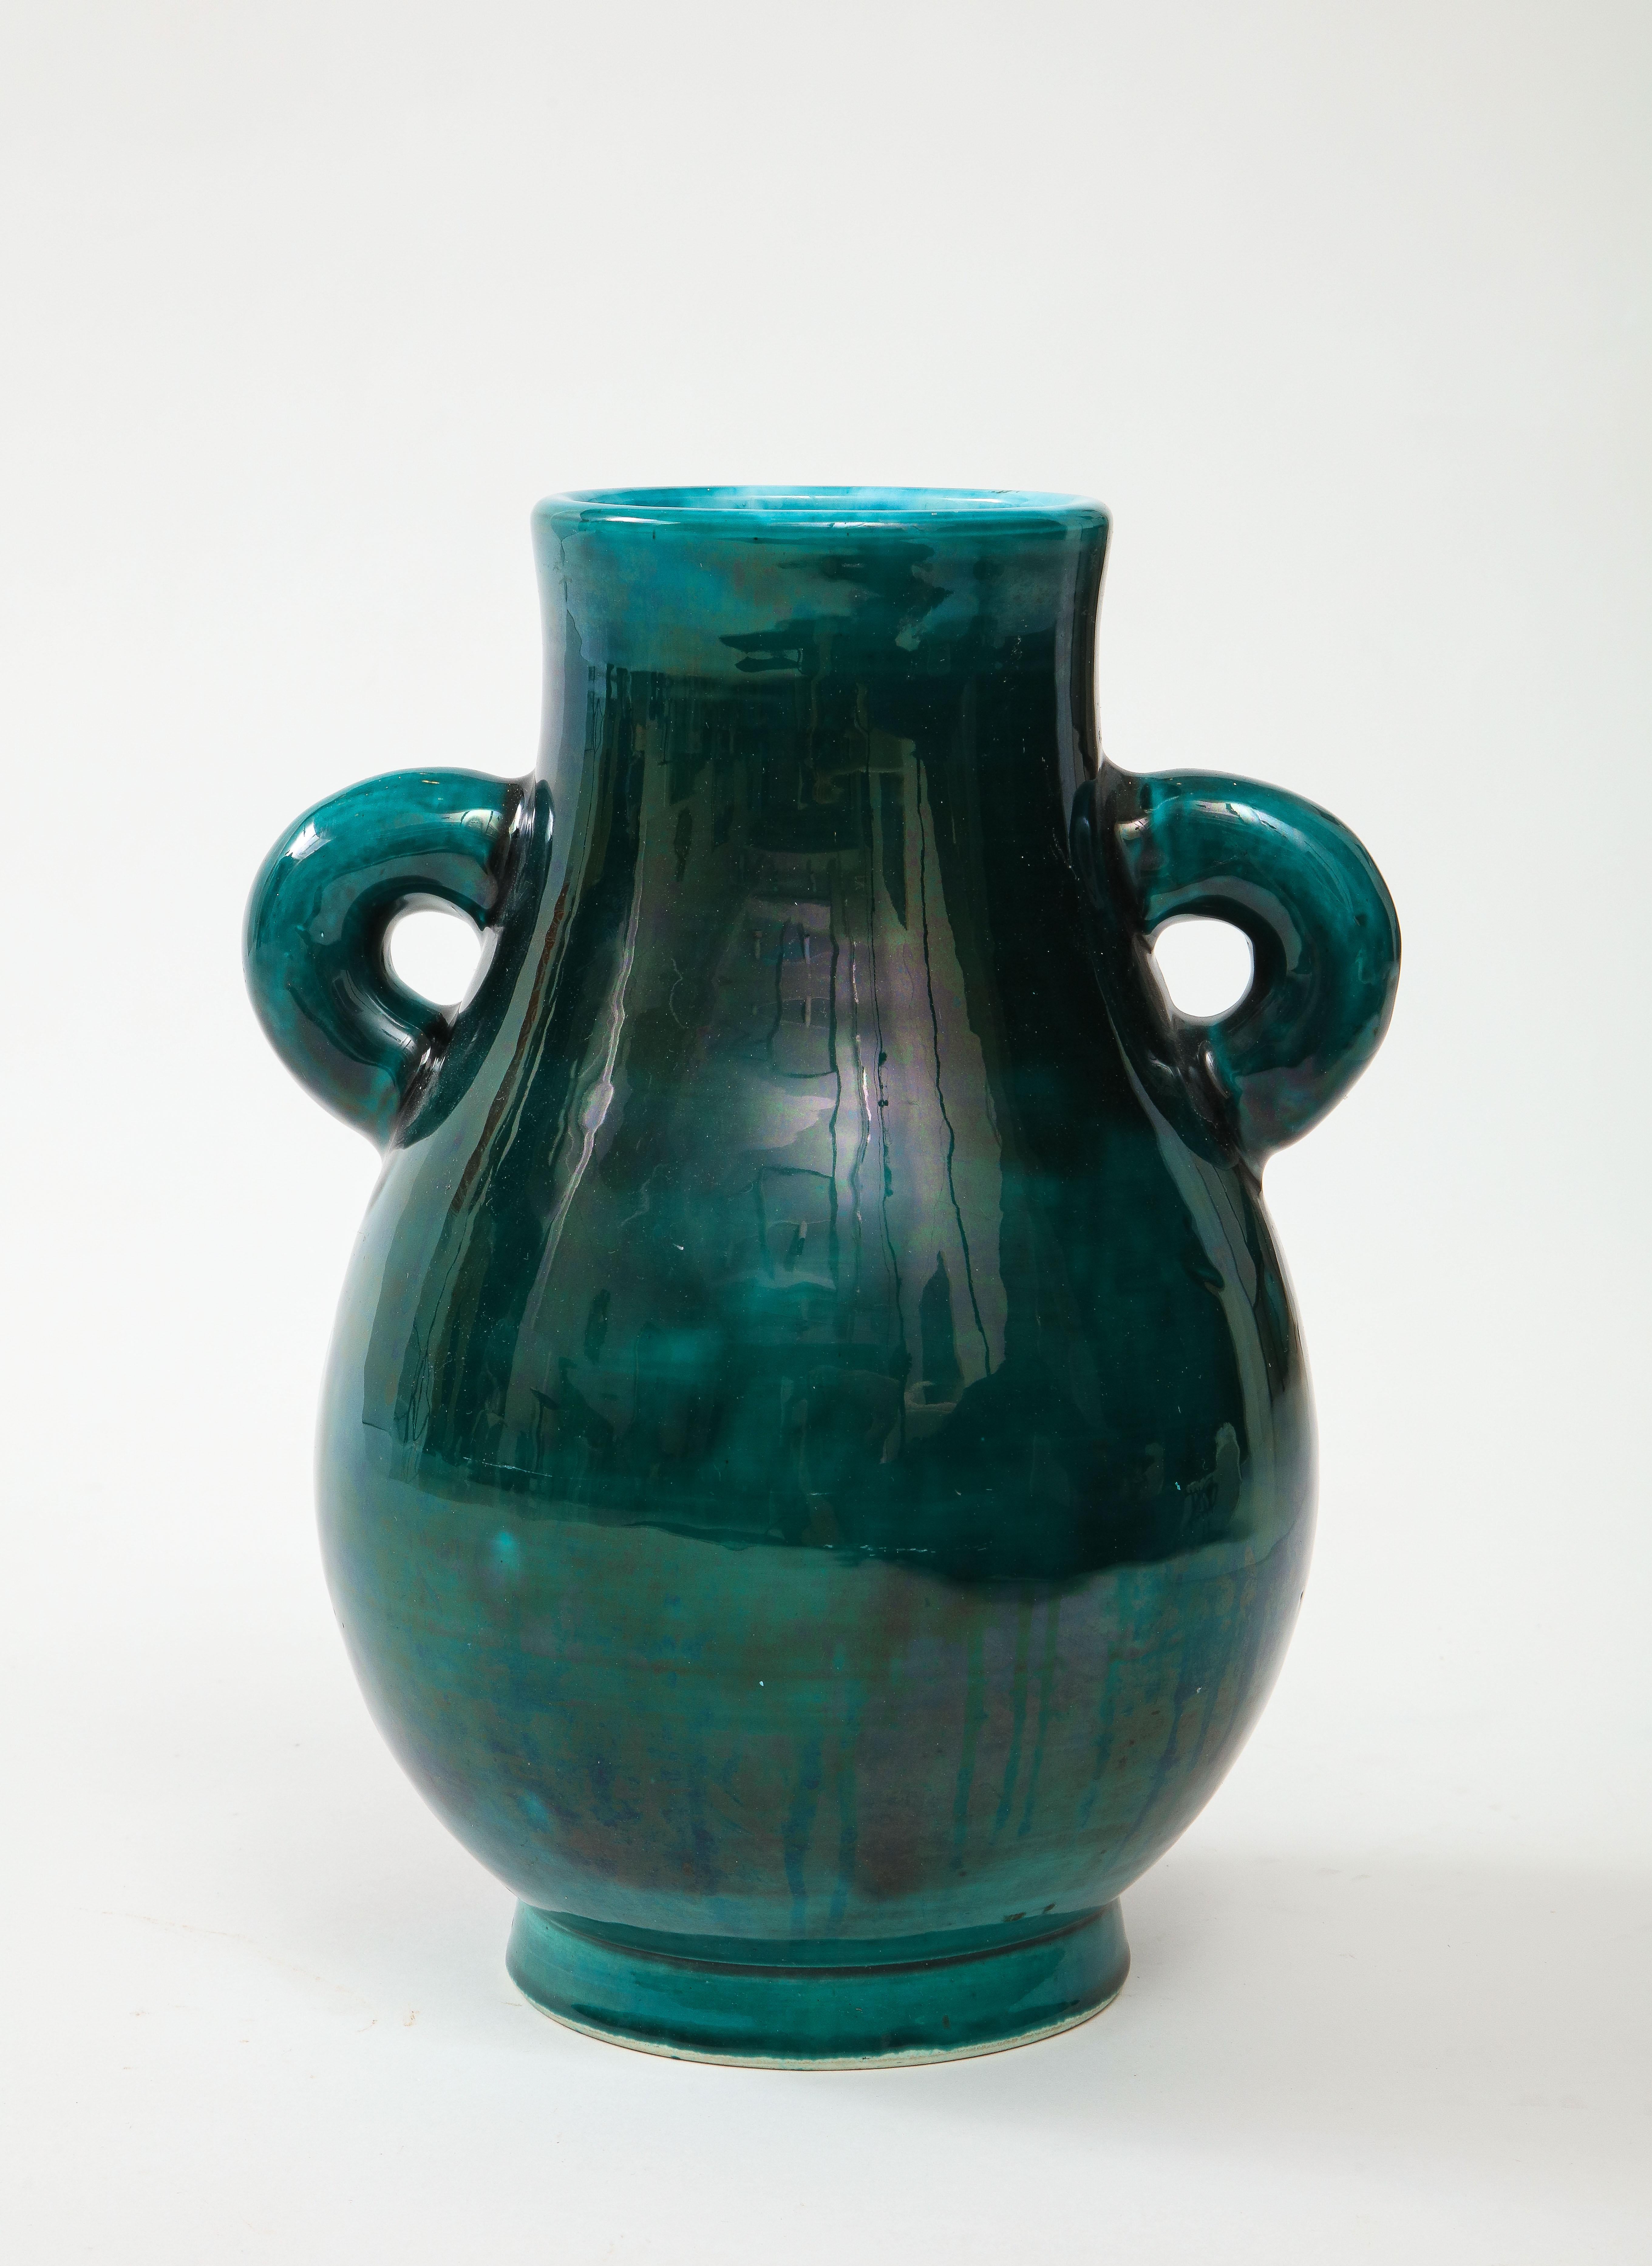 Vase bouquet du milieu du siècle, émaillé vert foncé, avec un intérieur émaillé turquoise et des poignées décoratives en forme de boucle. Signé, Accolay.